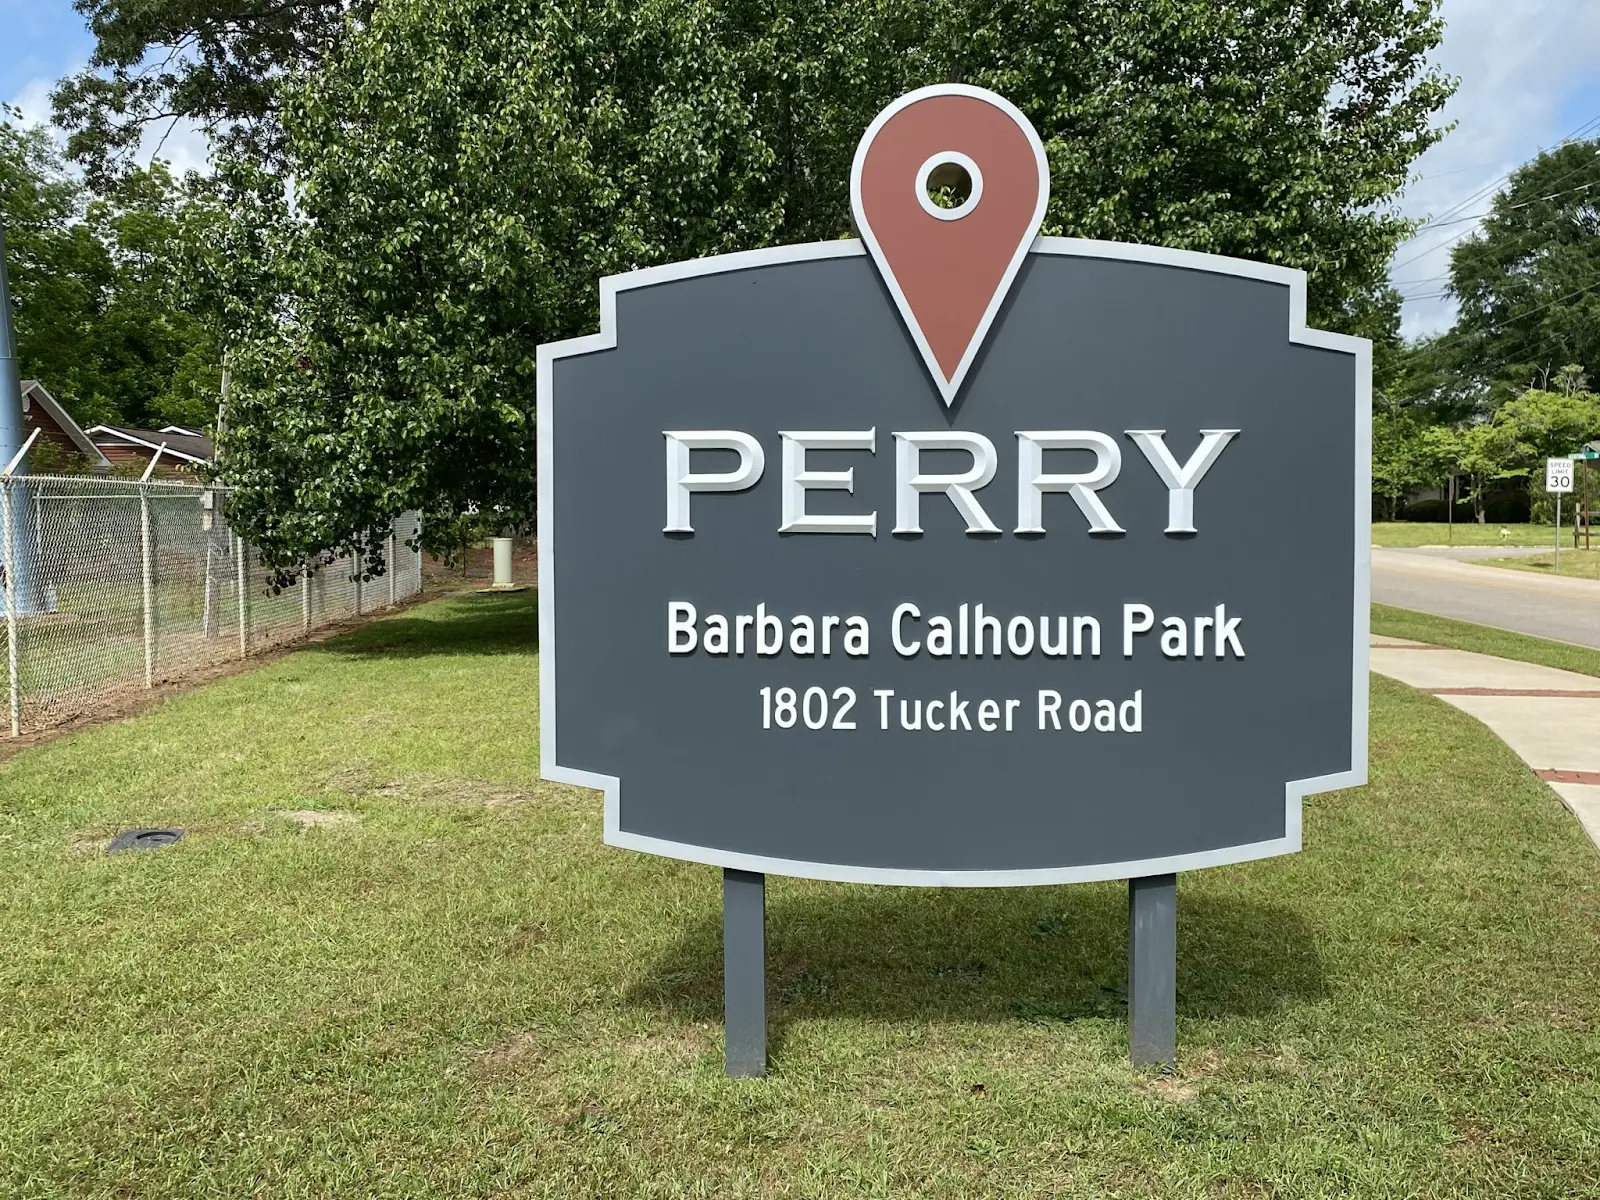 Barbara Calhoun Park